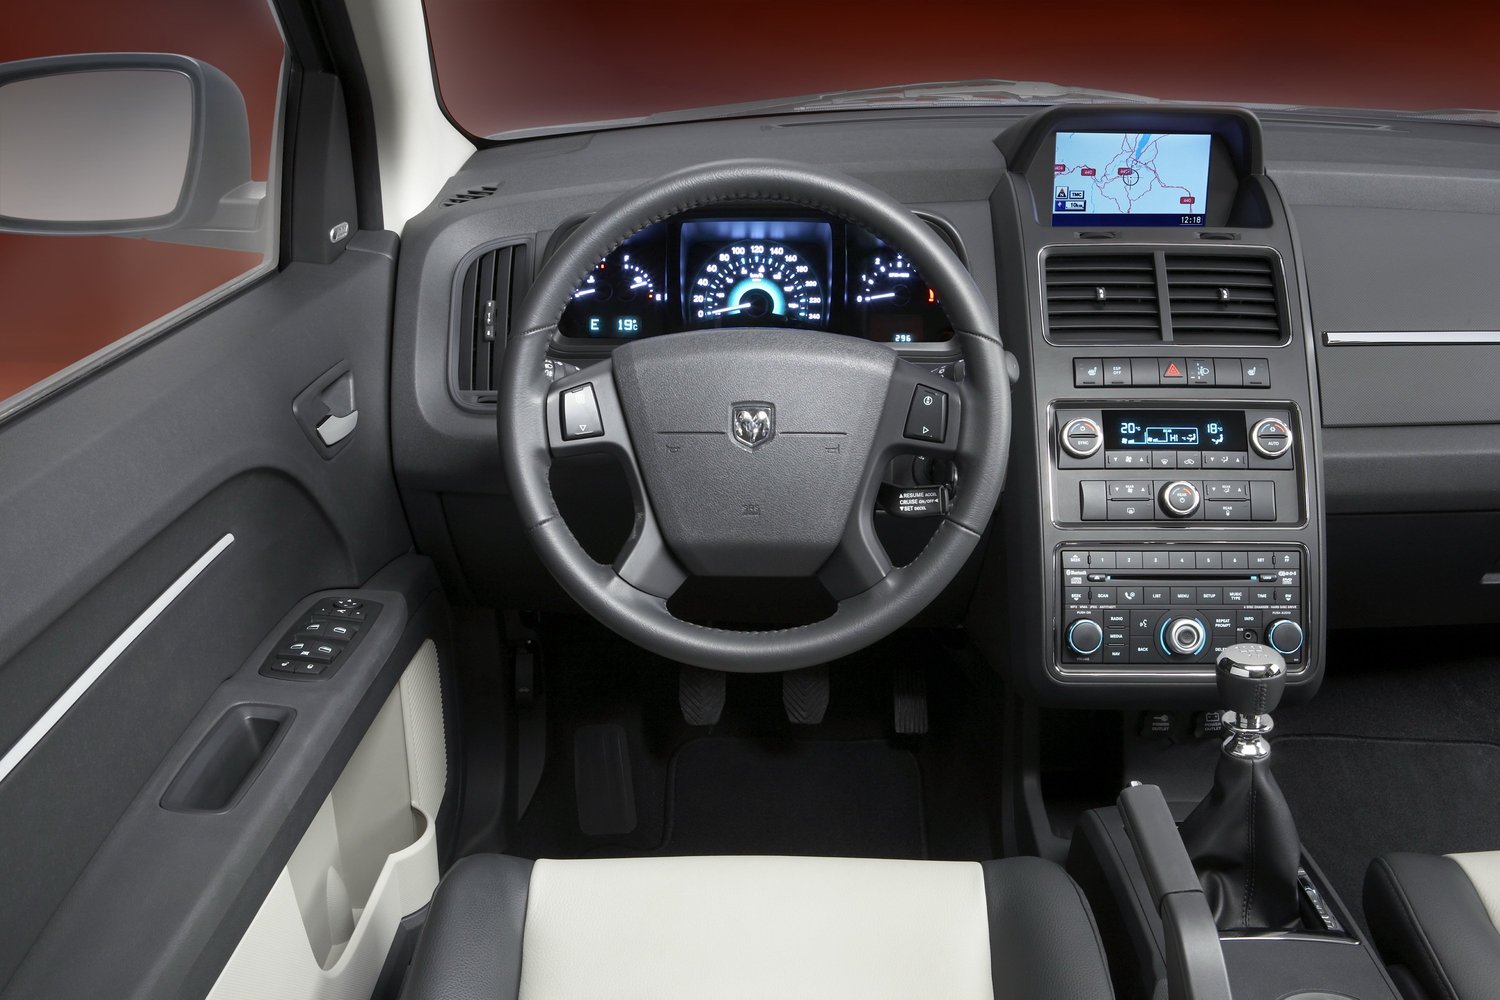 кроссовер Dodge Journey 2008 - 2016г выпуска модификация 3.5 AT (235 л.с.) 4×4